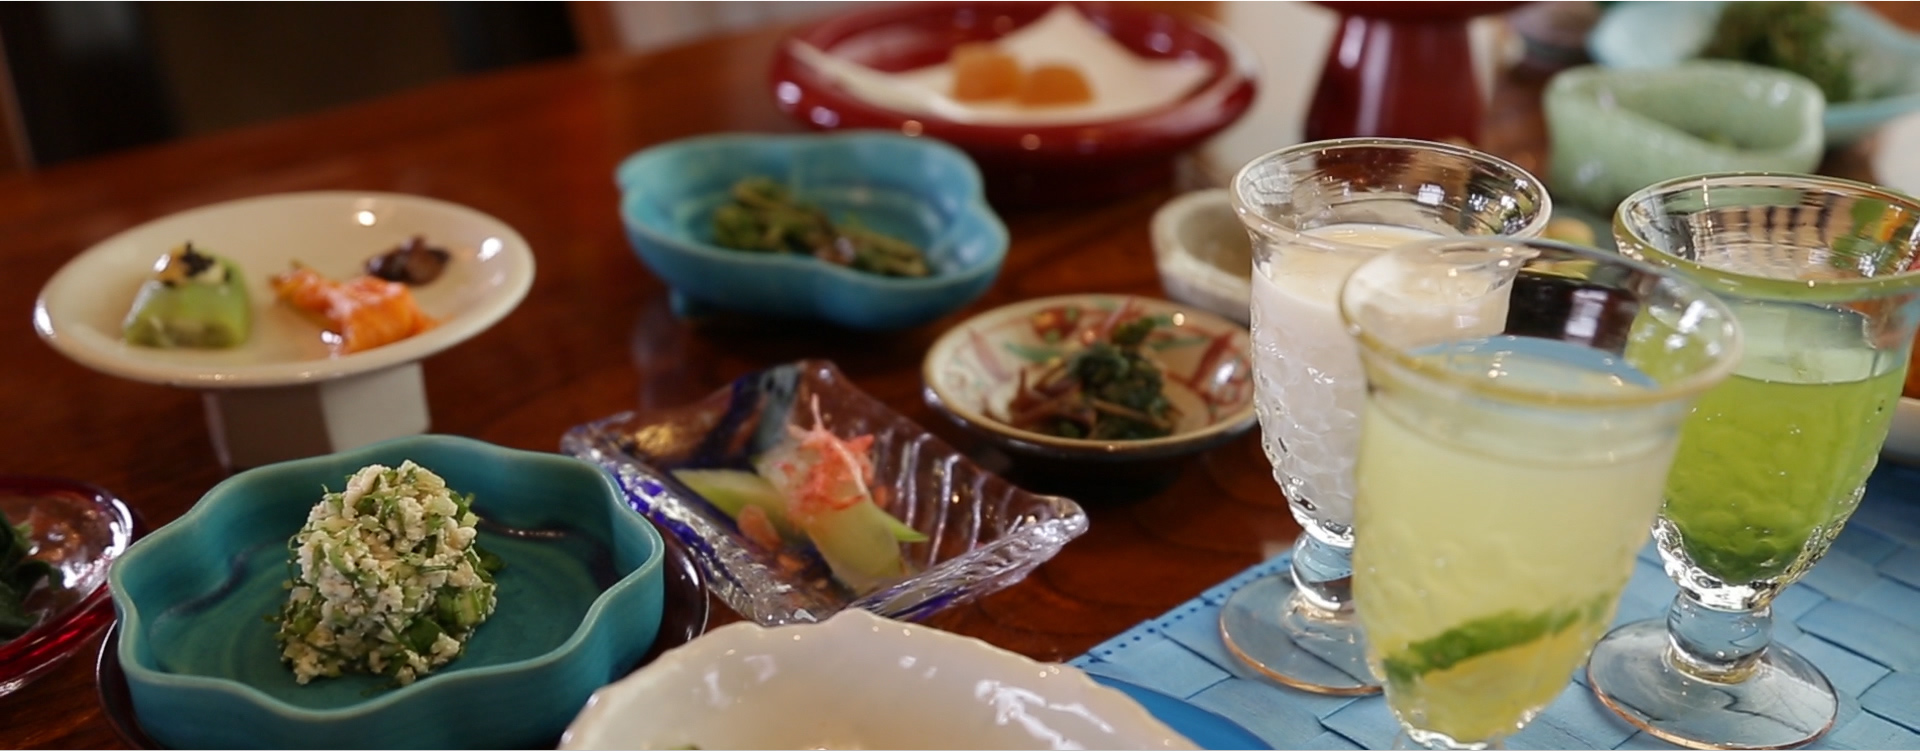 Okinawan Cuisine